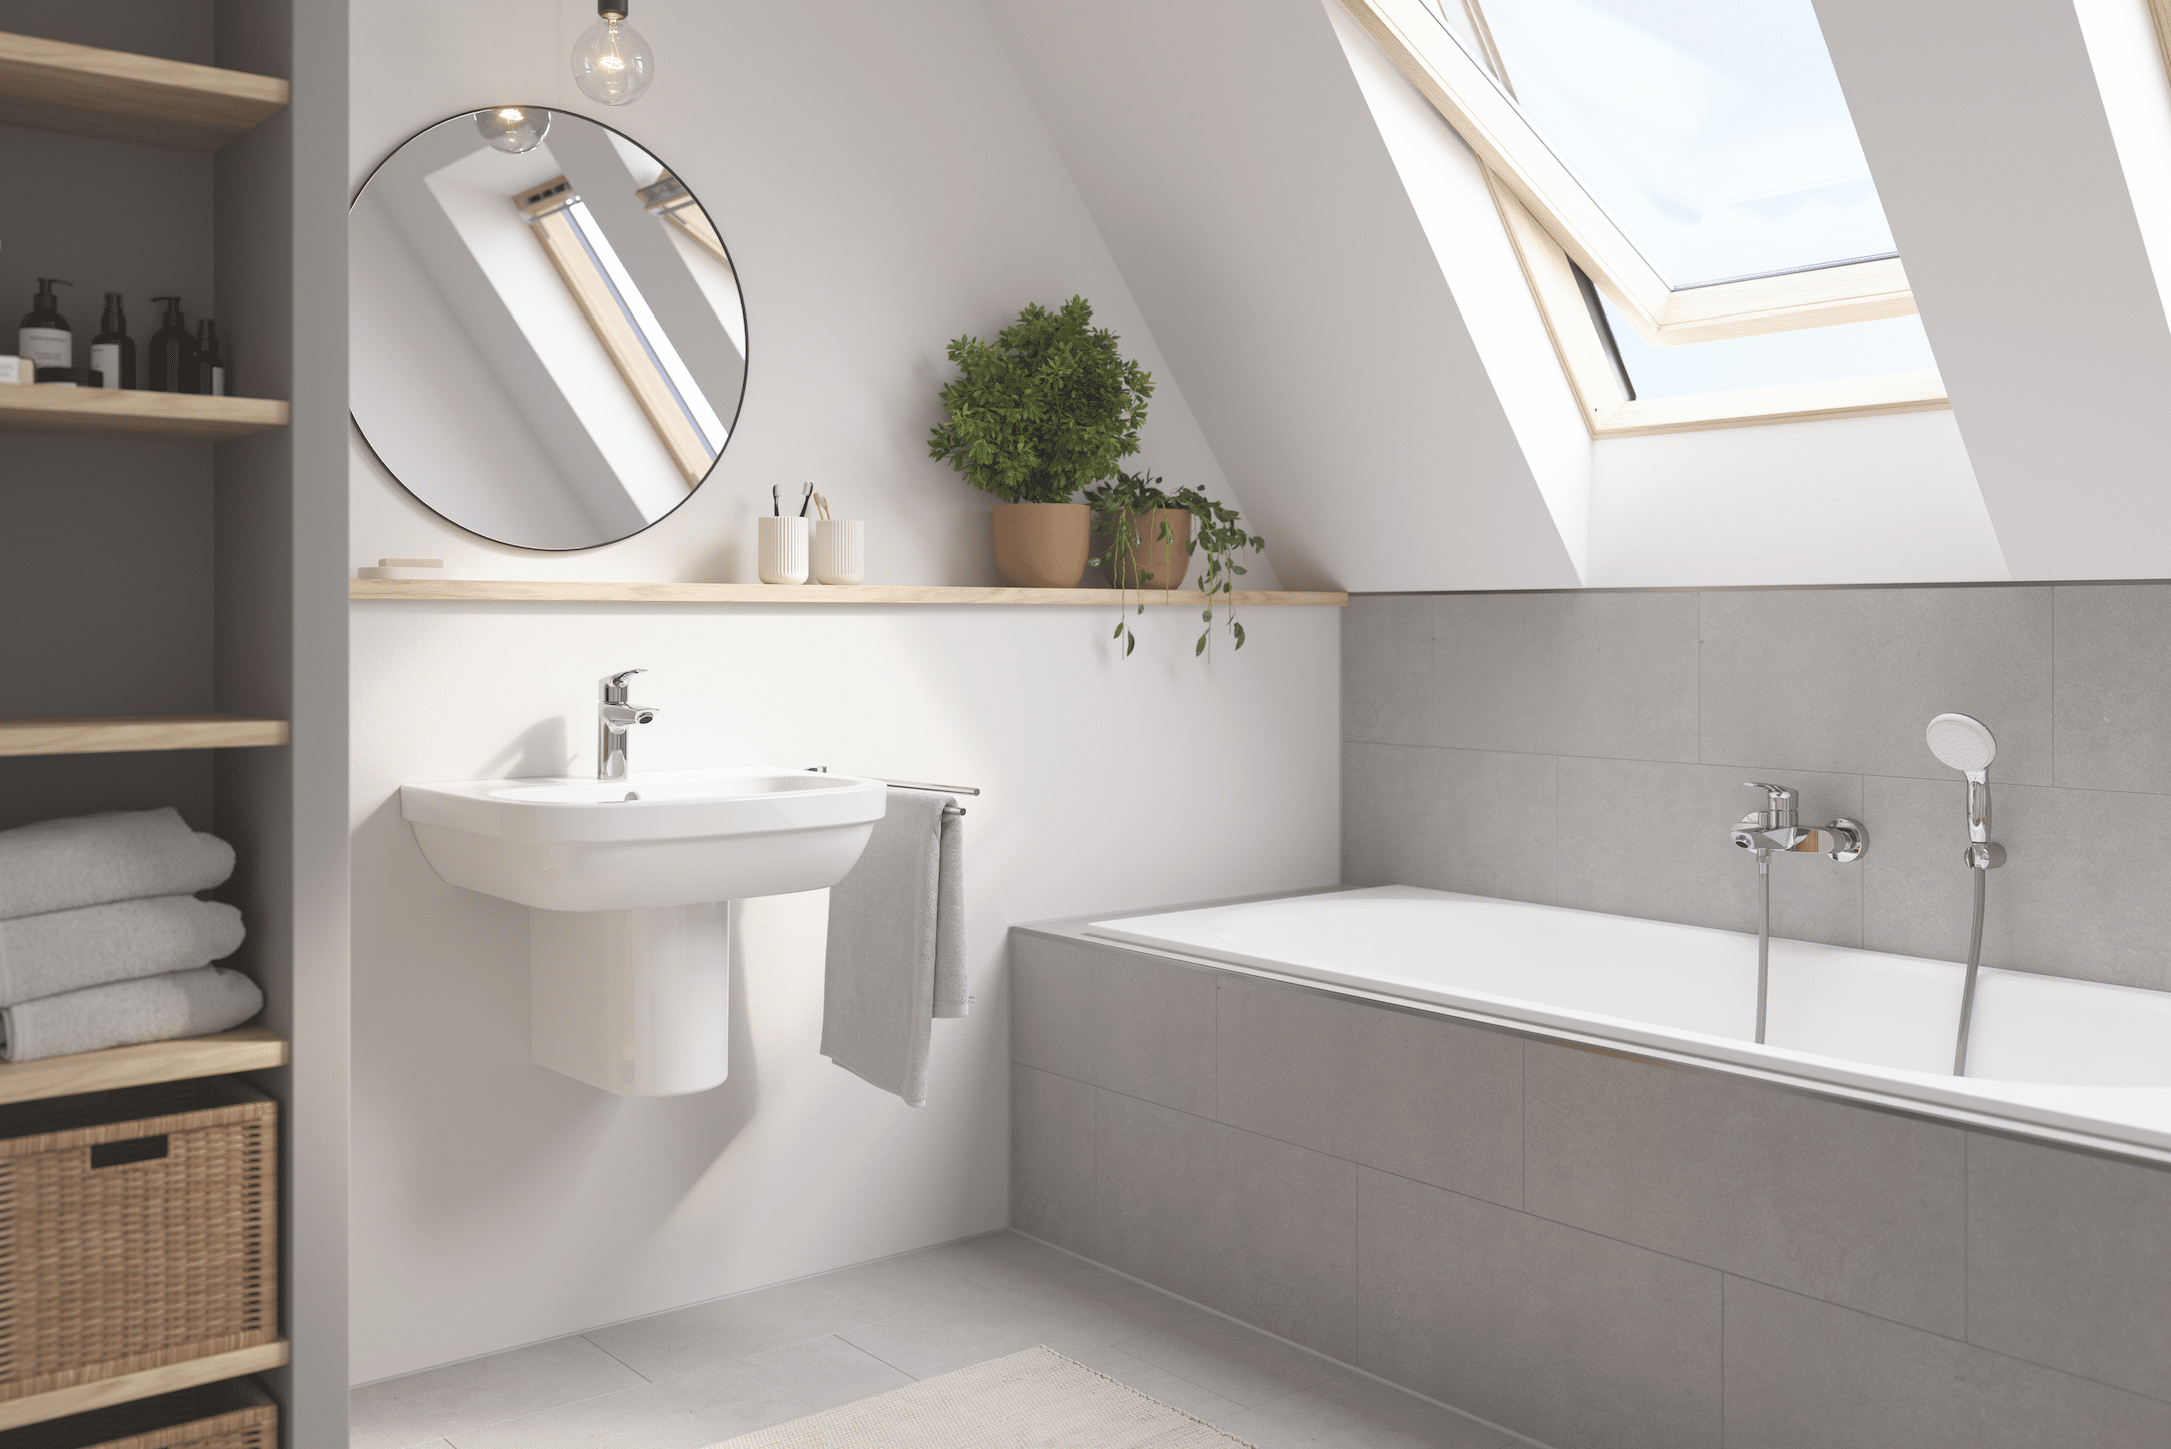 Grohe zeigt ein hellgrau gefliestes Bad mit Badewanne, Waschbecken, Spiegel und einem offenen Schrank für Handtücher.